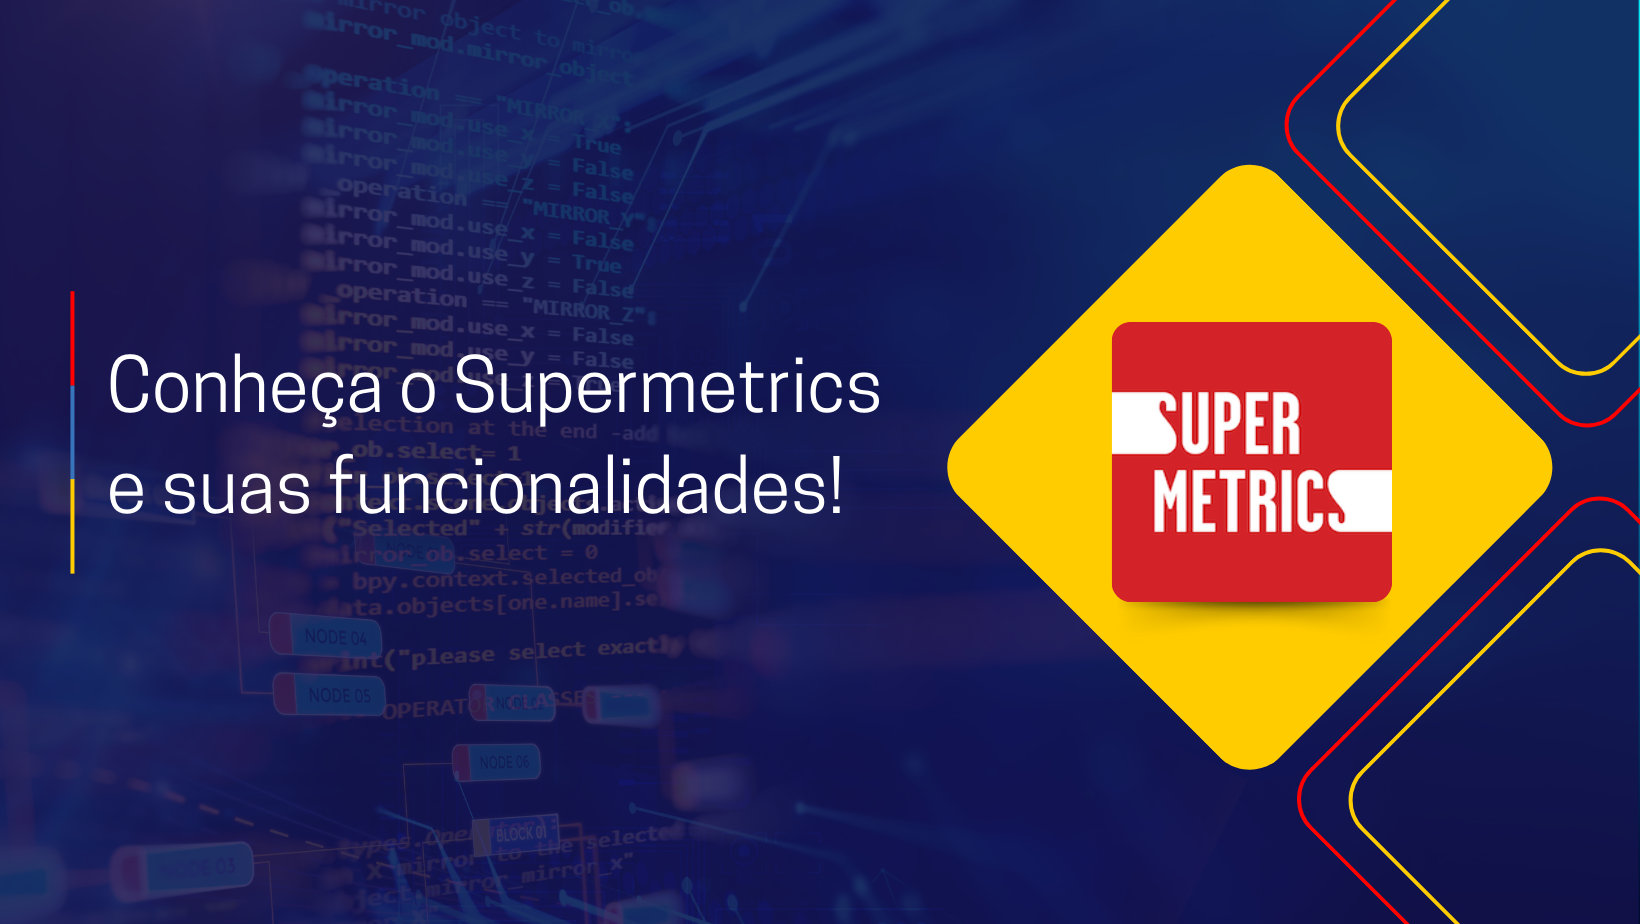 Conheça o Supermetrics e suas funcionalidades